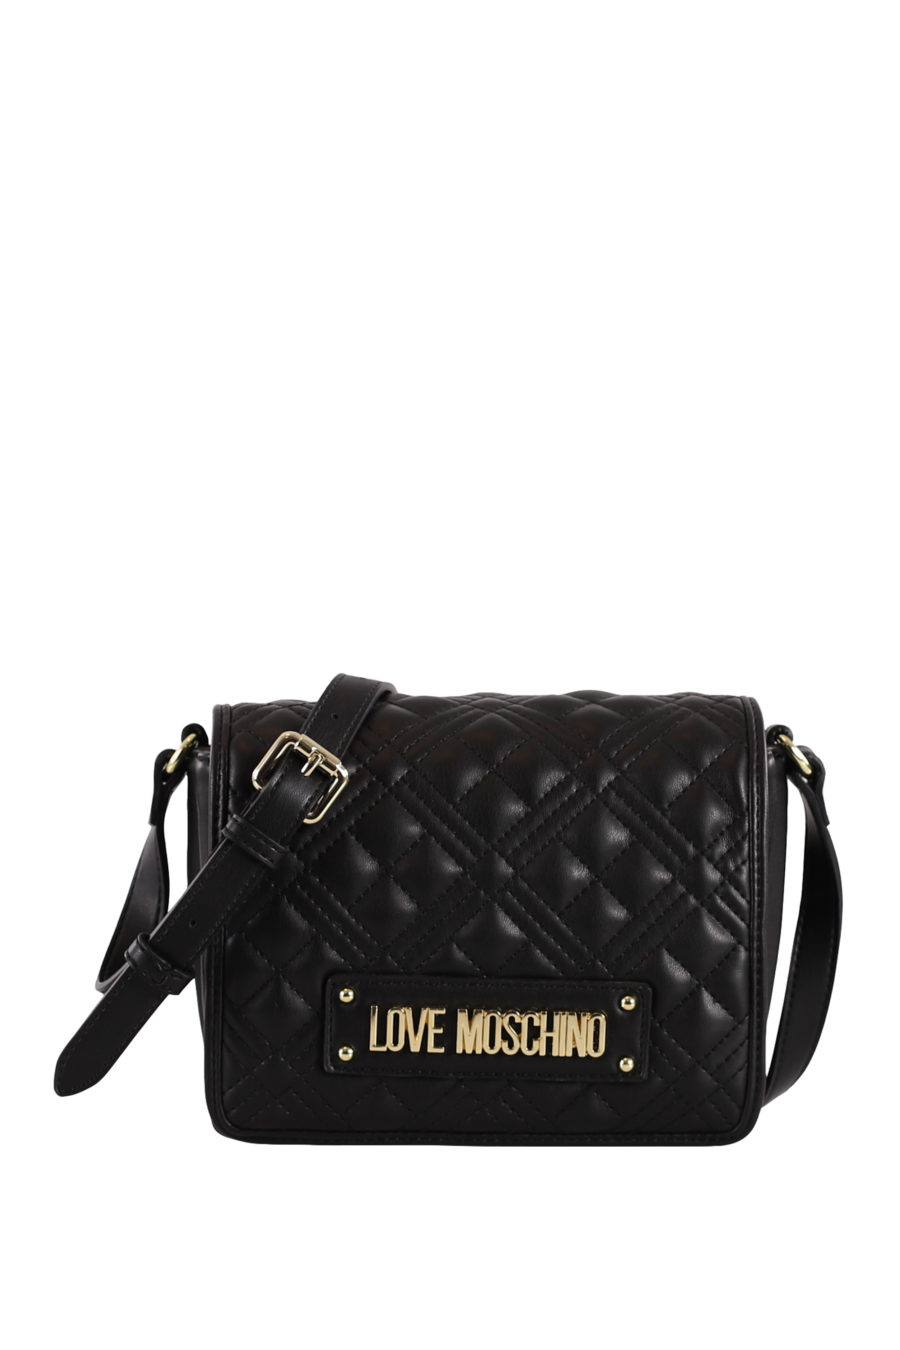 Mini black shoulder bag with logo letters - IMG 0240